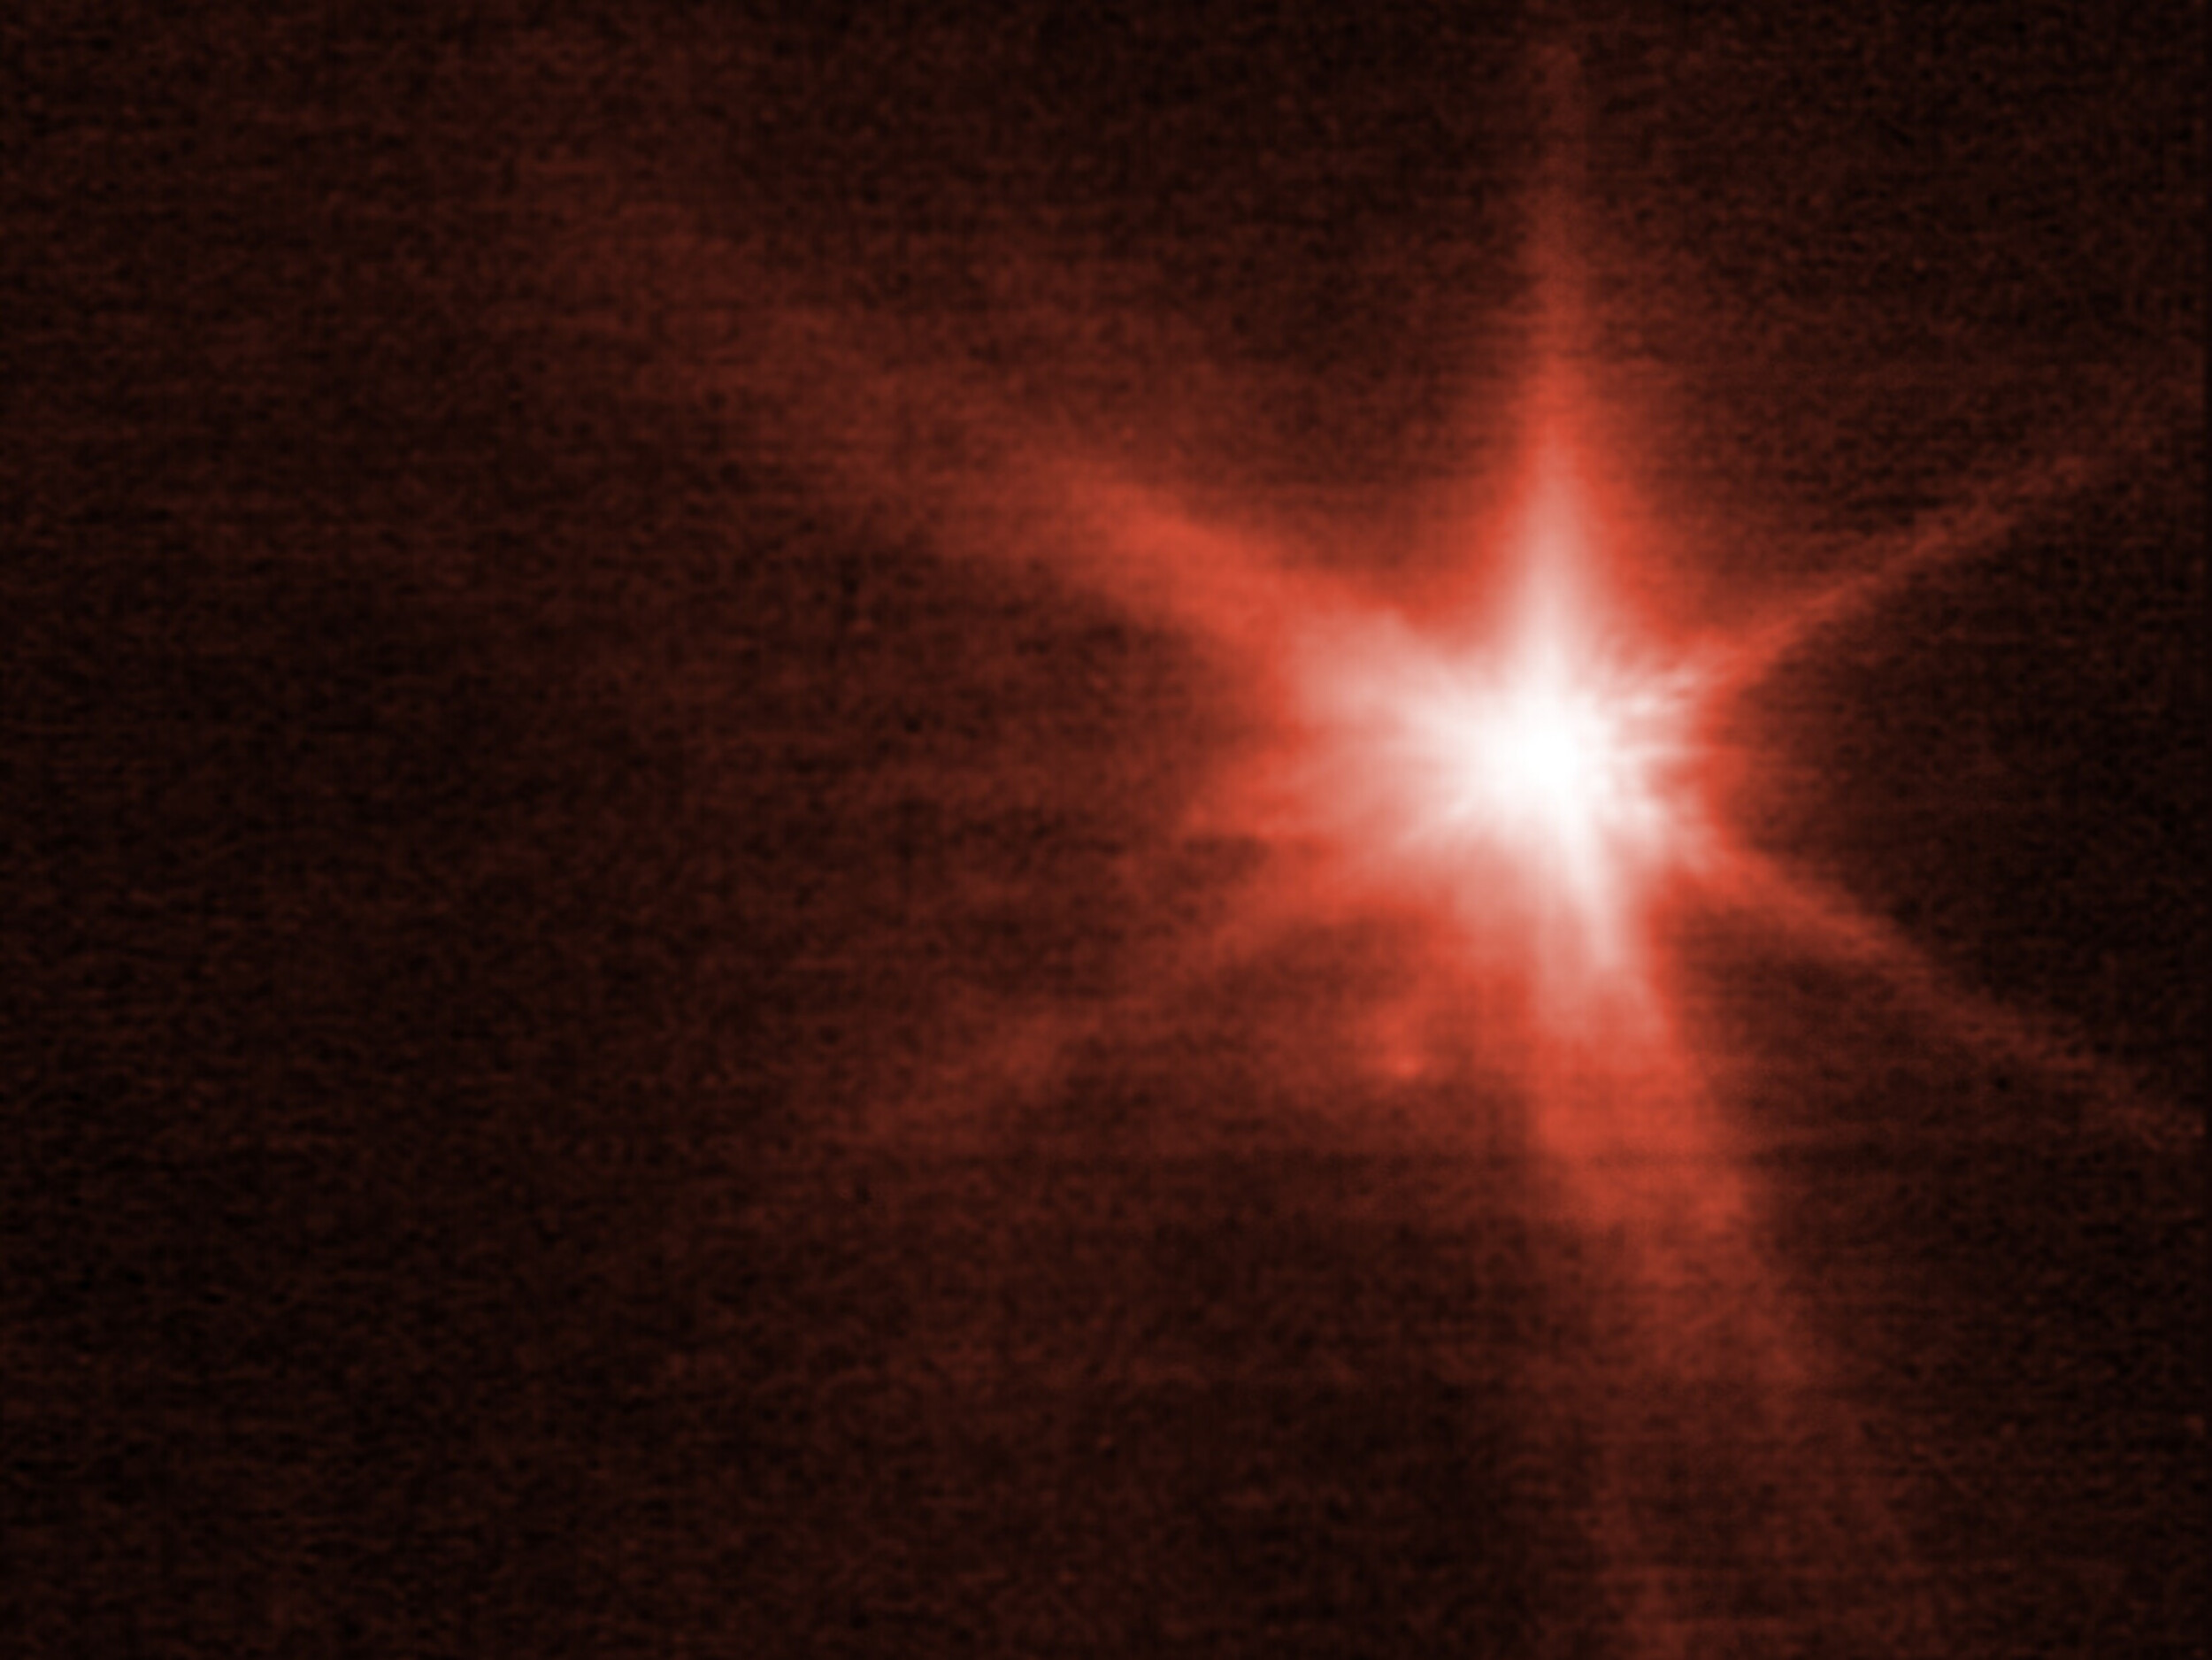 Los telescopios espaciales James Webb y Hubble captan asombrosas imágenes del impacto contra un asteroide